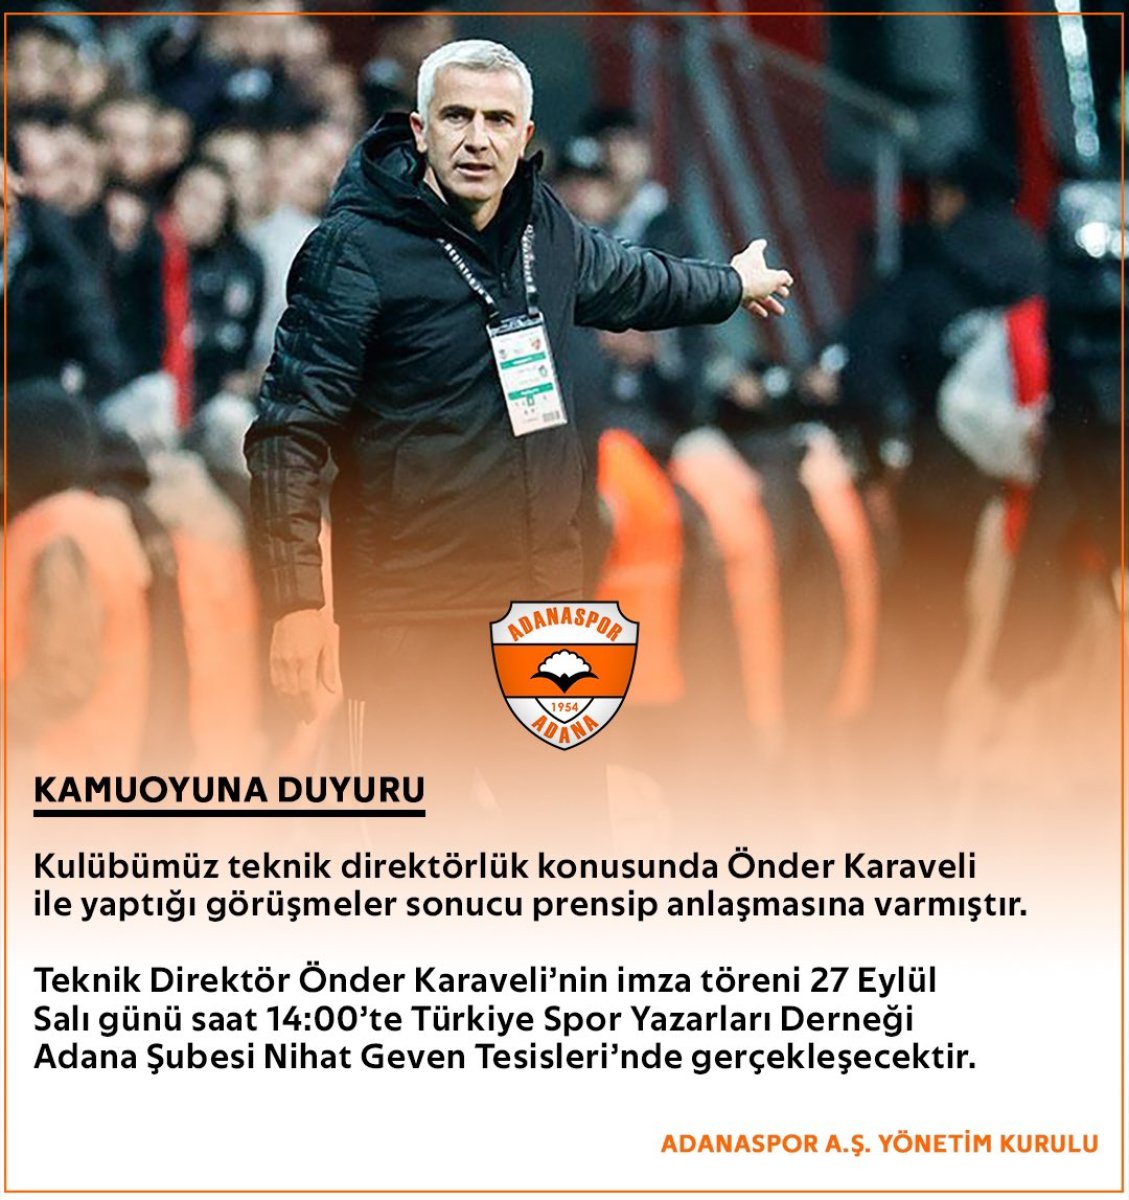 Önder Karaveli, Adanaspor da #1